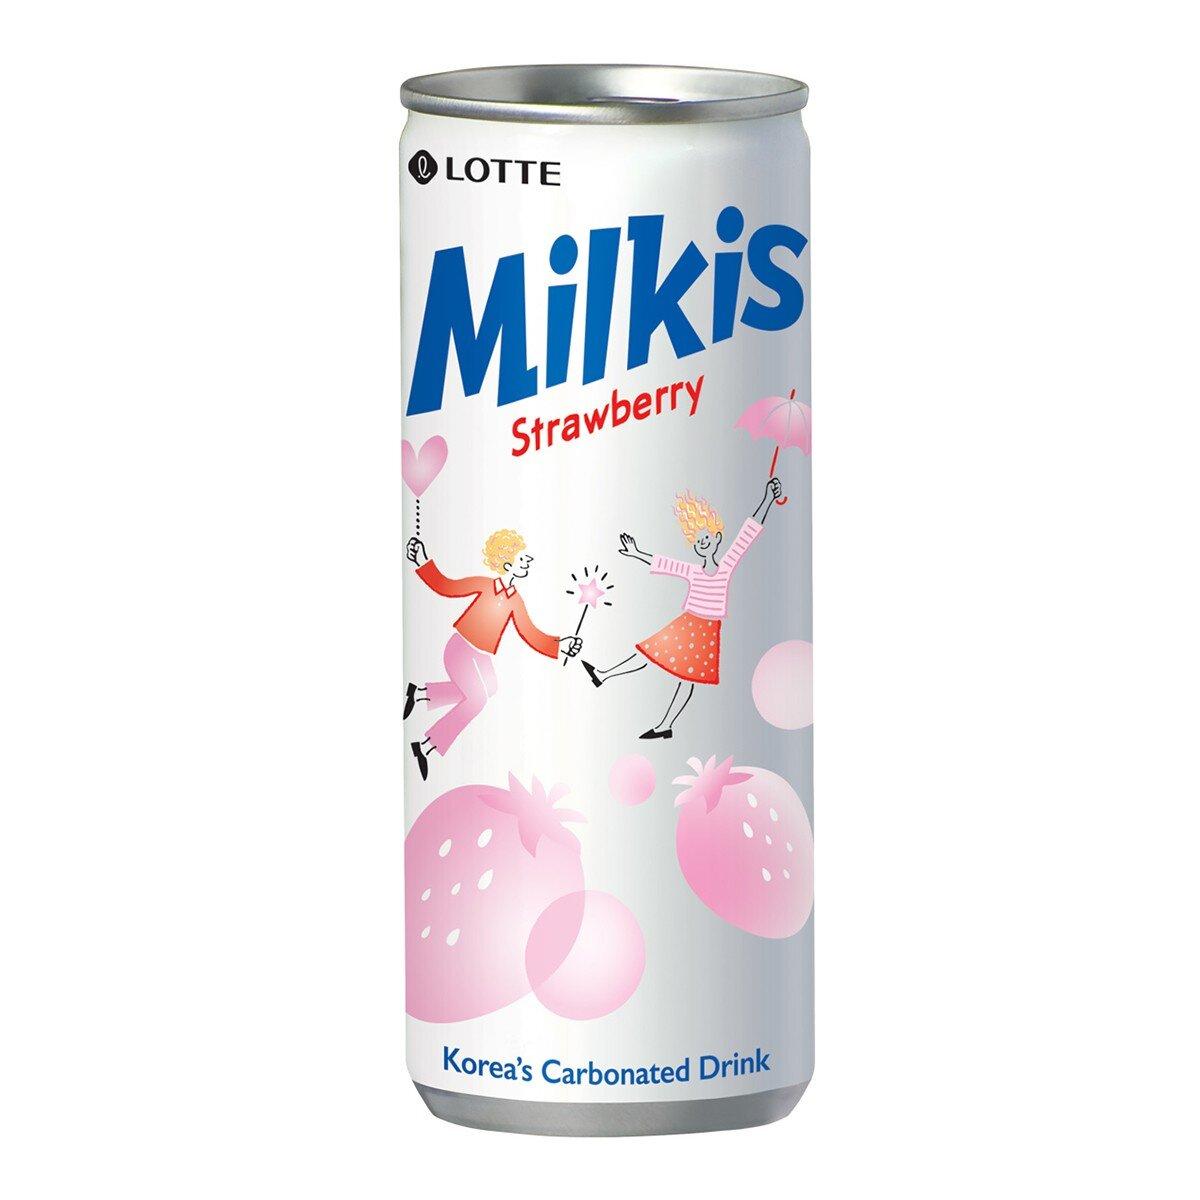 韓國樂天 草莓乳酸蘇打風味飲롯데 딸기맛 밀키스250ml